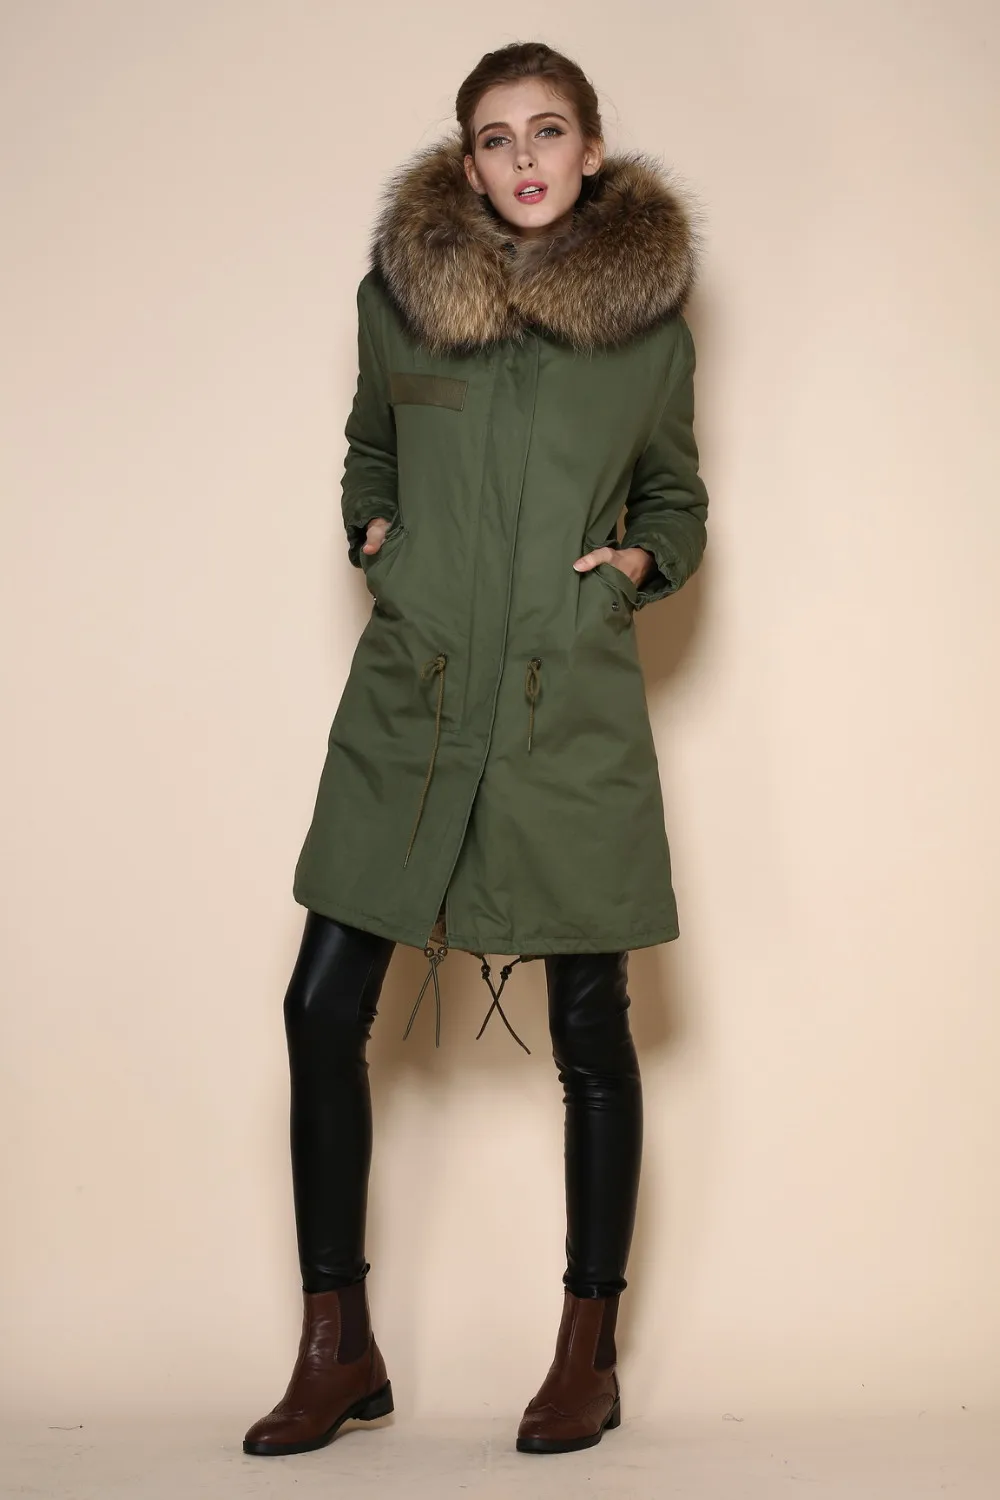 Зимняя куртка Для женщин дизайн меховым воротником кролика шерстяное пальто Для женщин черный шерстяной жакет пальто Для женщин мех шерстяной пиджак